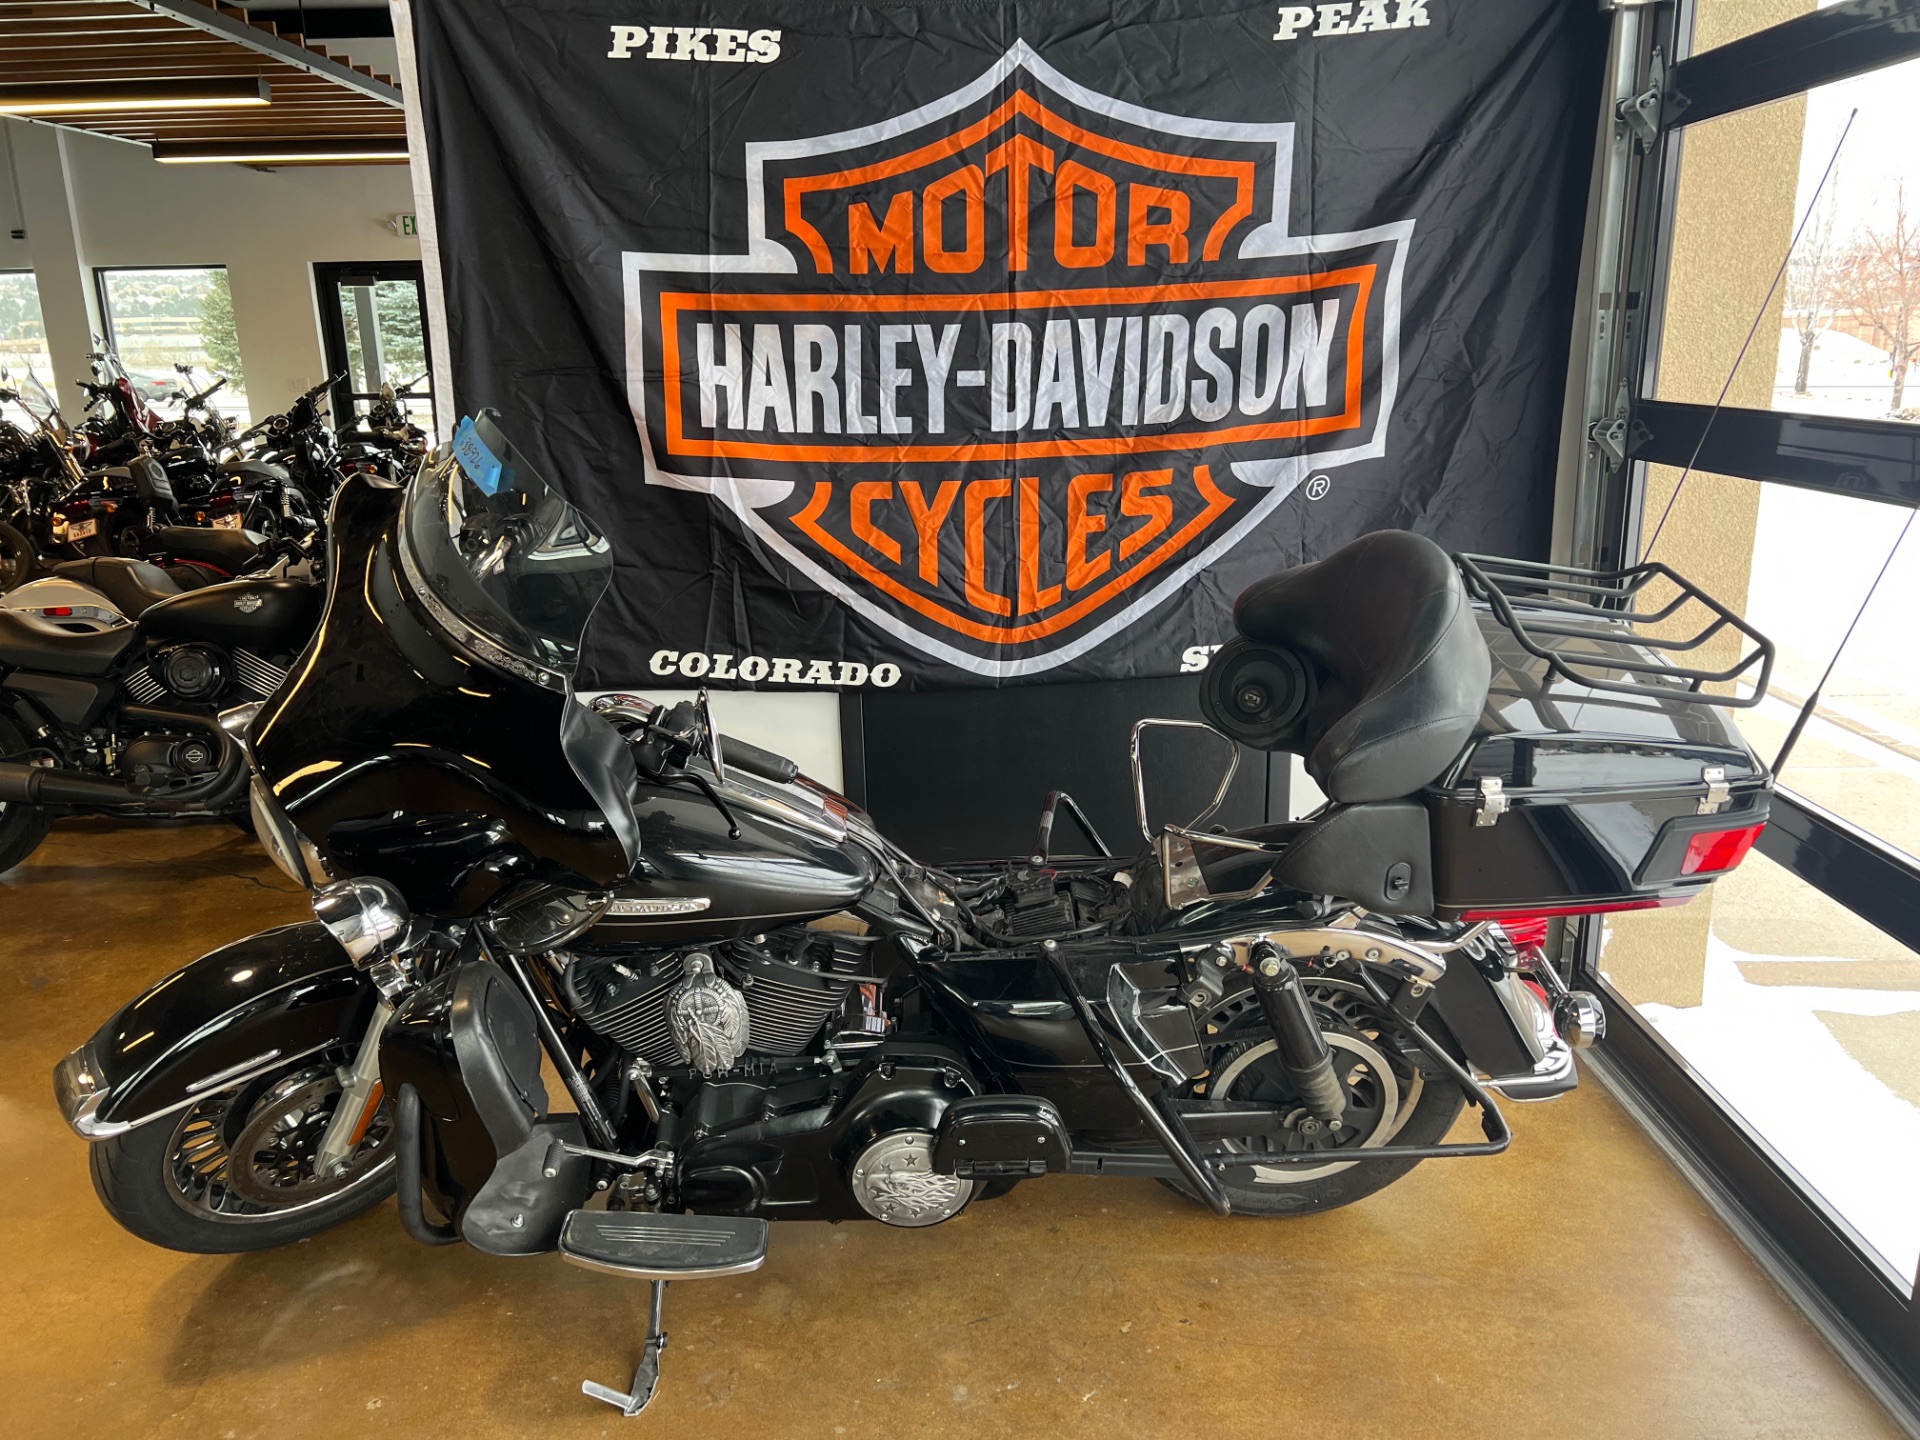 2013 Harley-Davidson Electra Glide® Ultra Limited in Colorado Springs, Colorado - Photo 5